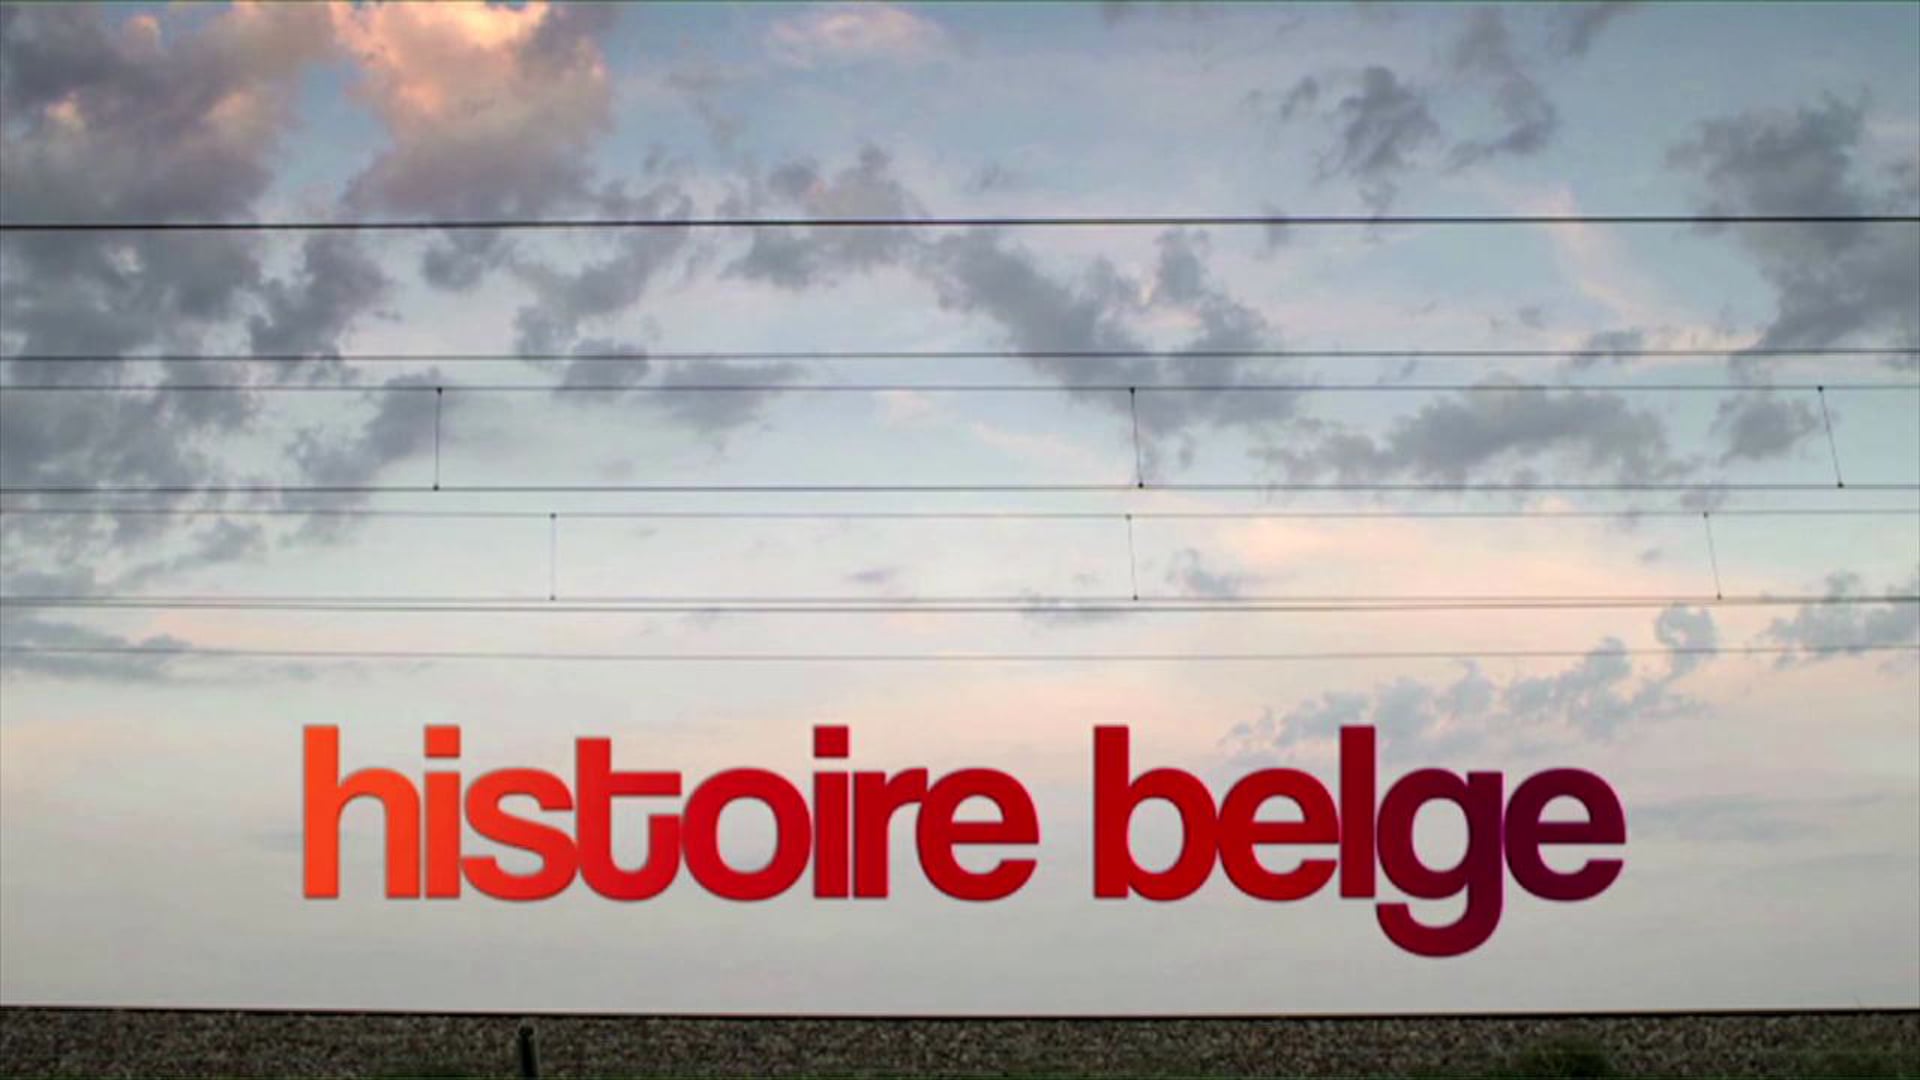 Histoire Belge - bande annonce • Fiction (France 2 / La Luna)